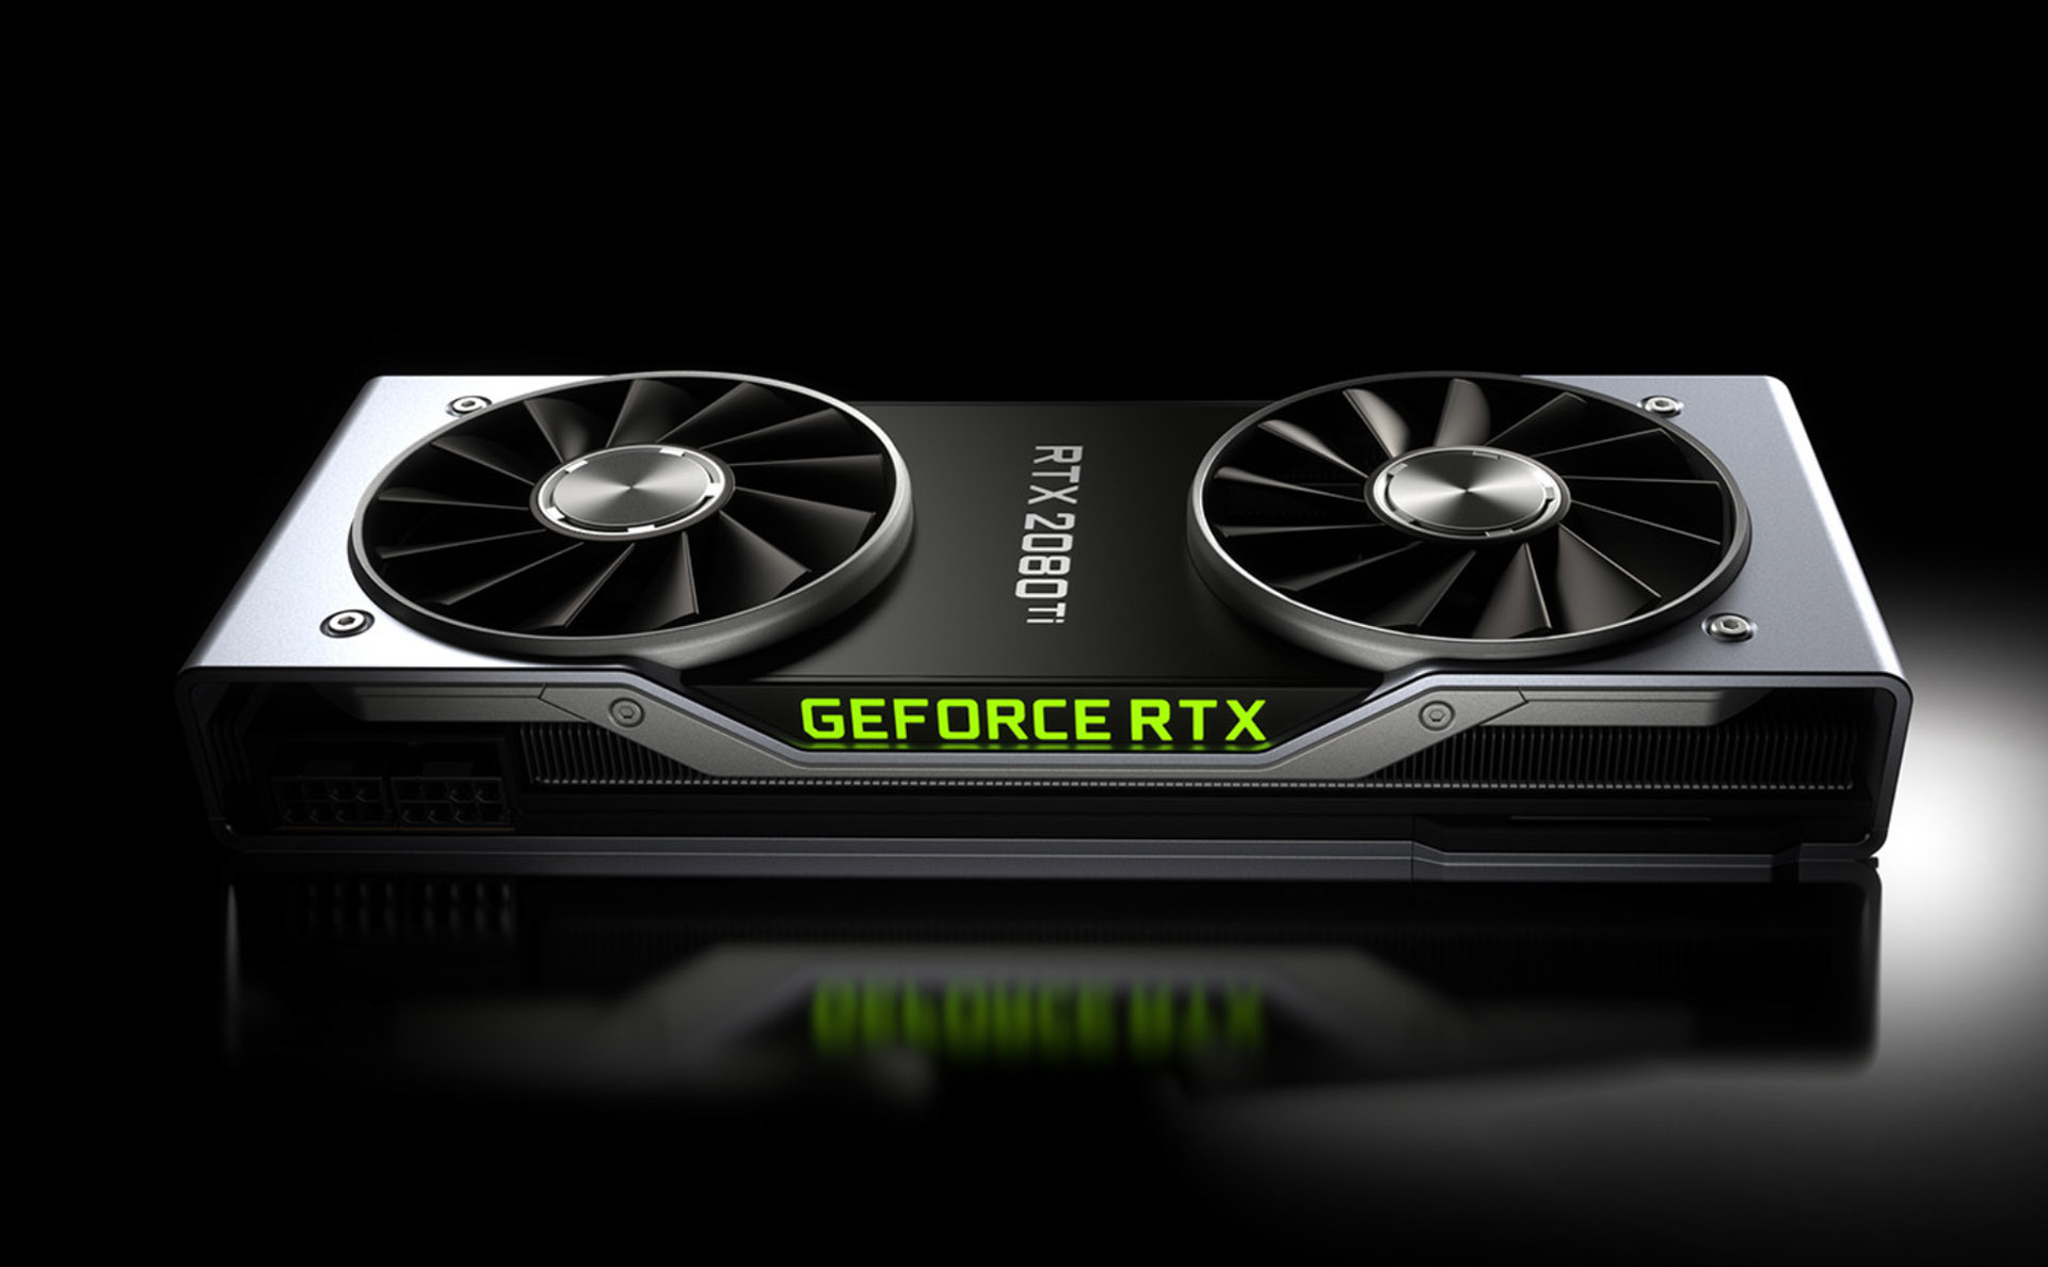 Nvidia xác nhận sẽ bán song song GeForce GTX và GeForce RTX cho đến Quý 1/2019